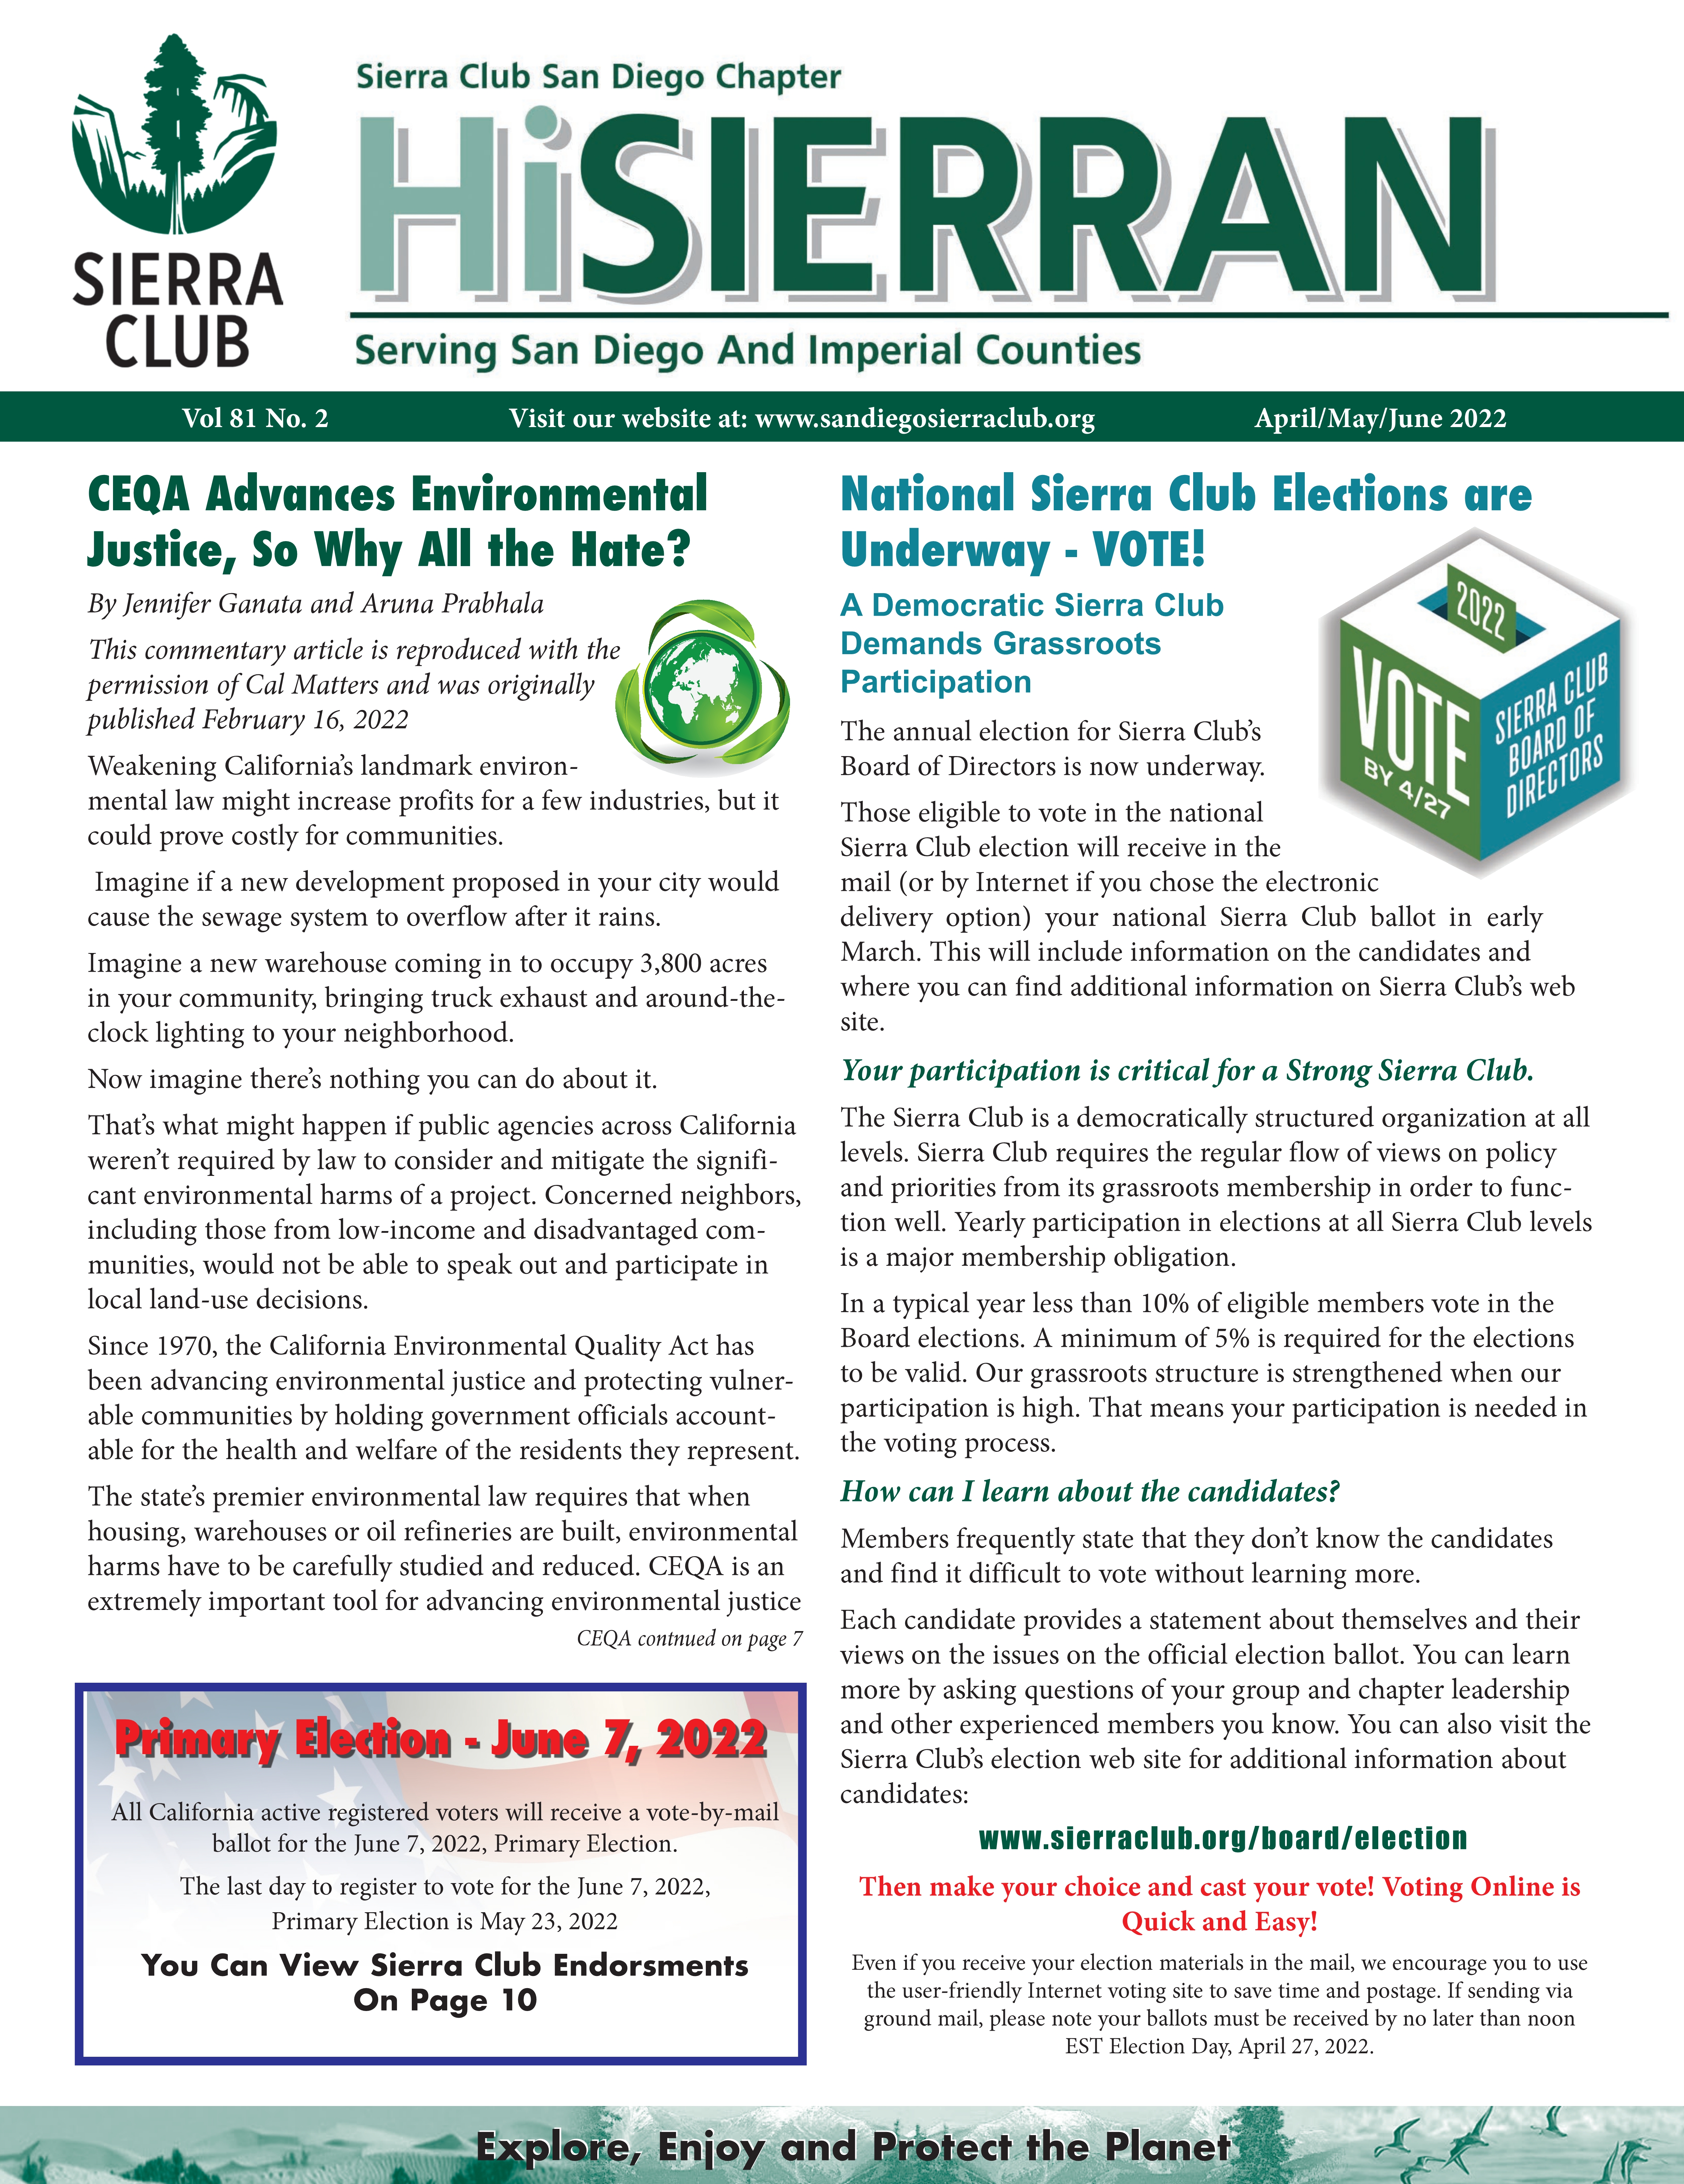 January-March Hi Sierran newsletter